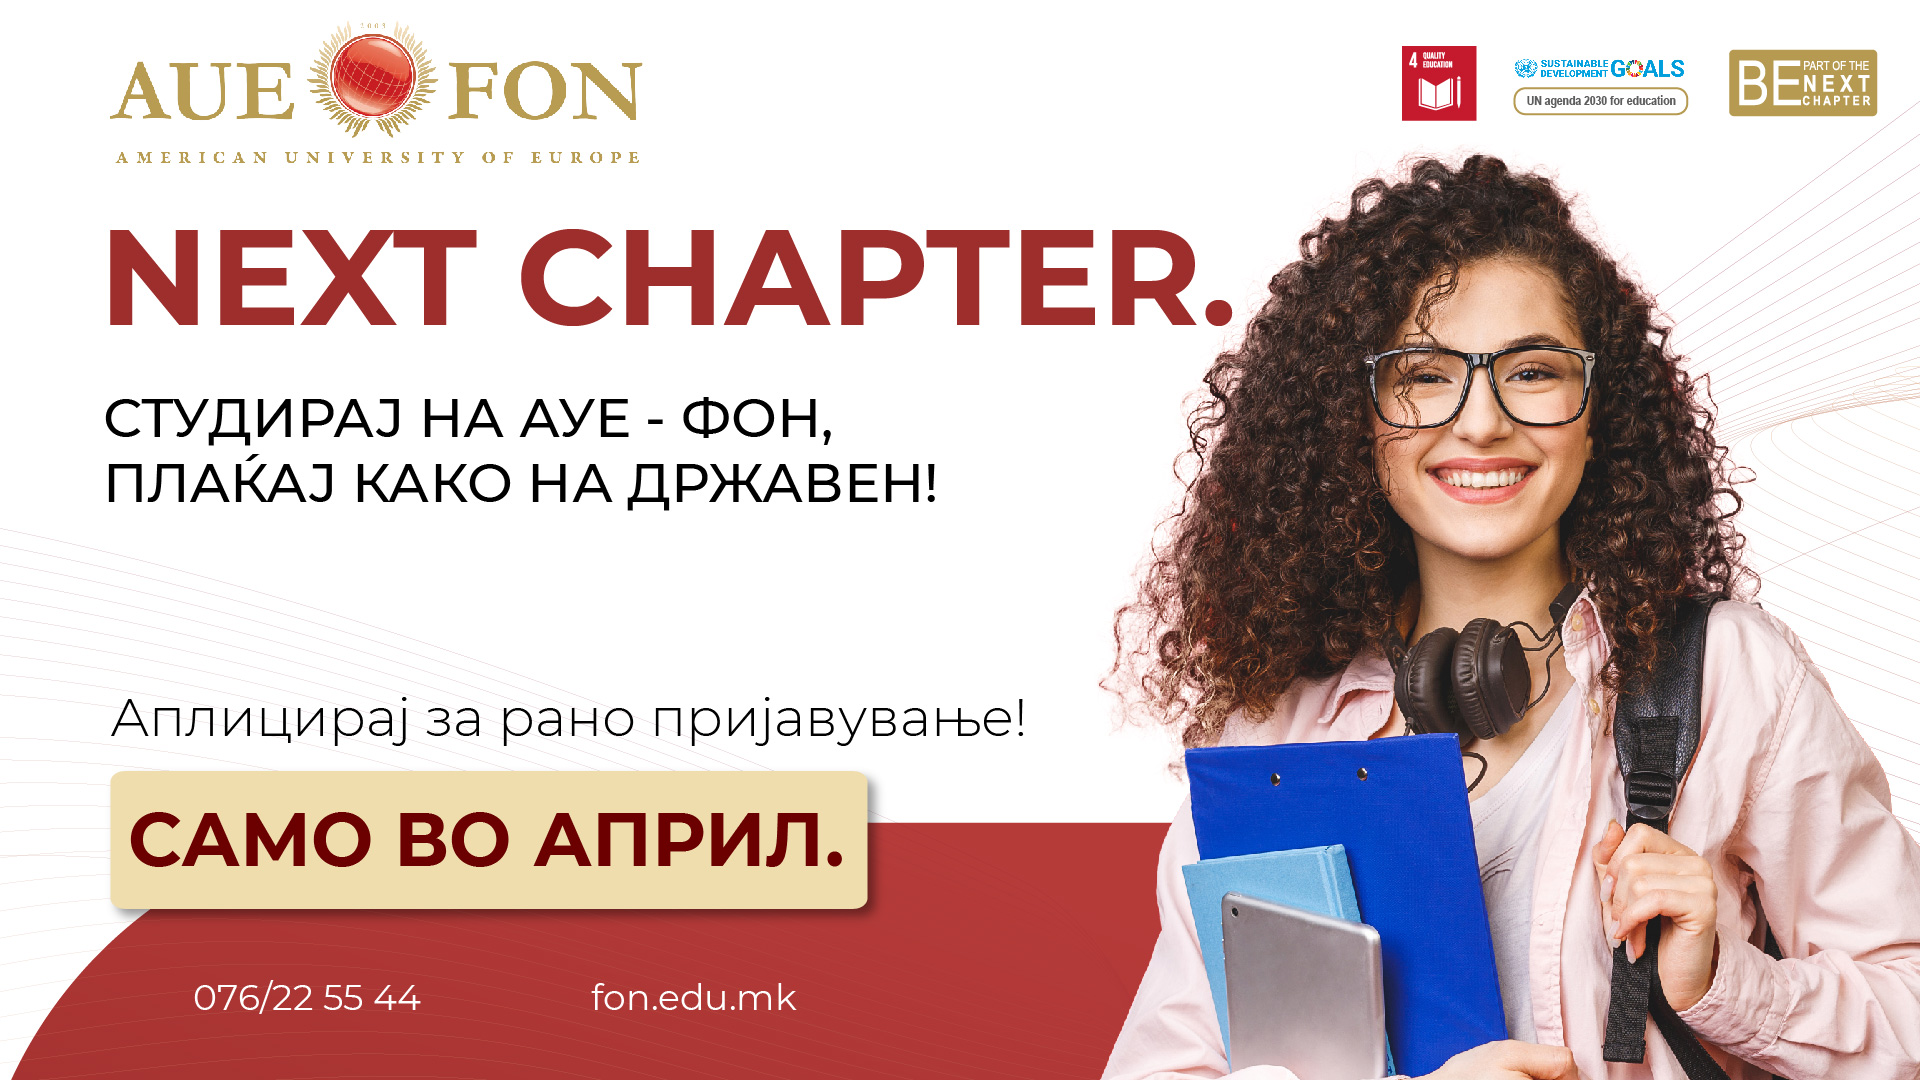 Кампањата “Следно поглавје” на АУЕ-ФОН е вистински избор за секој иден студент